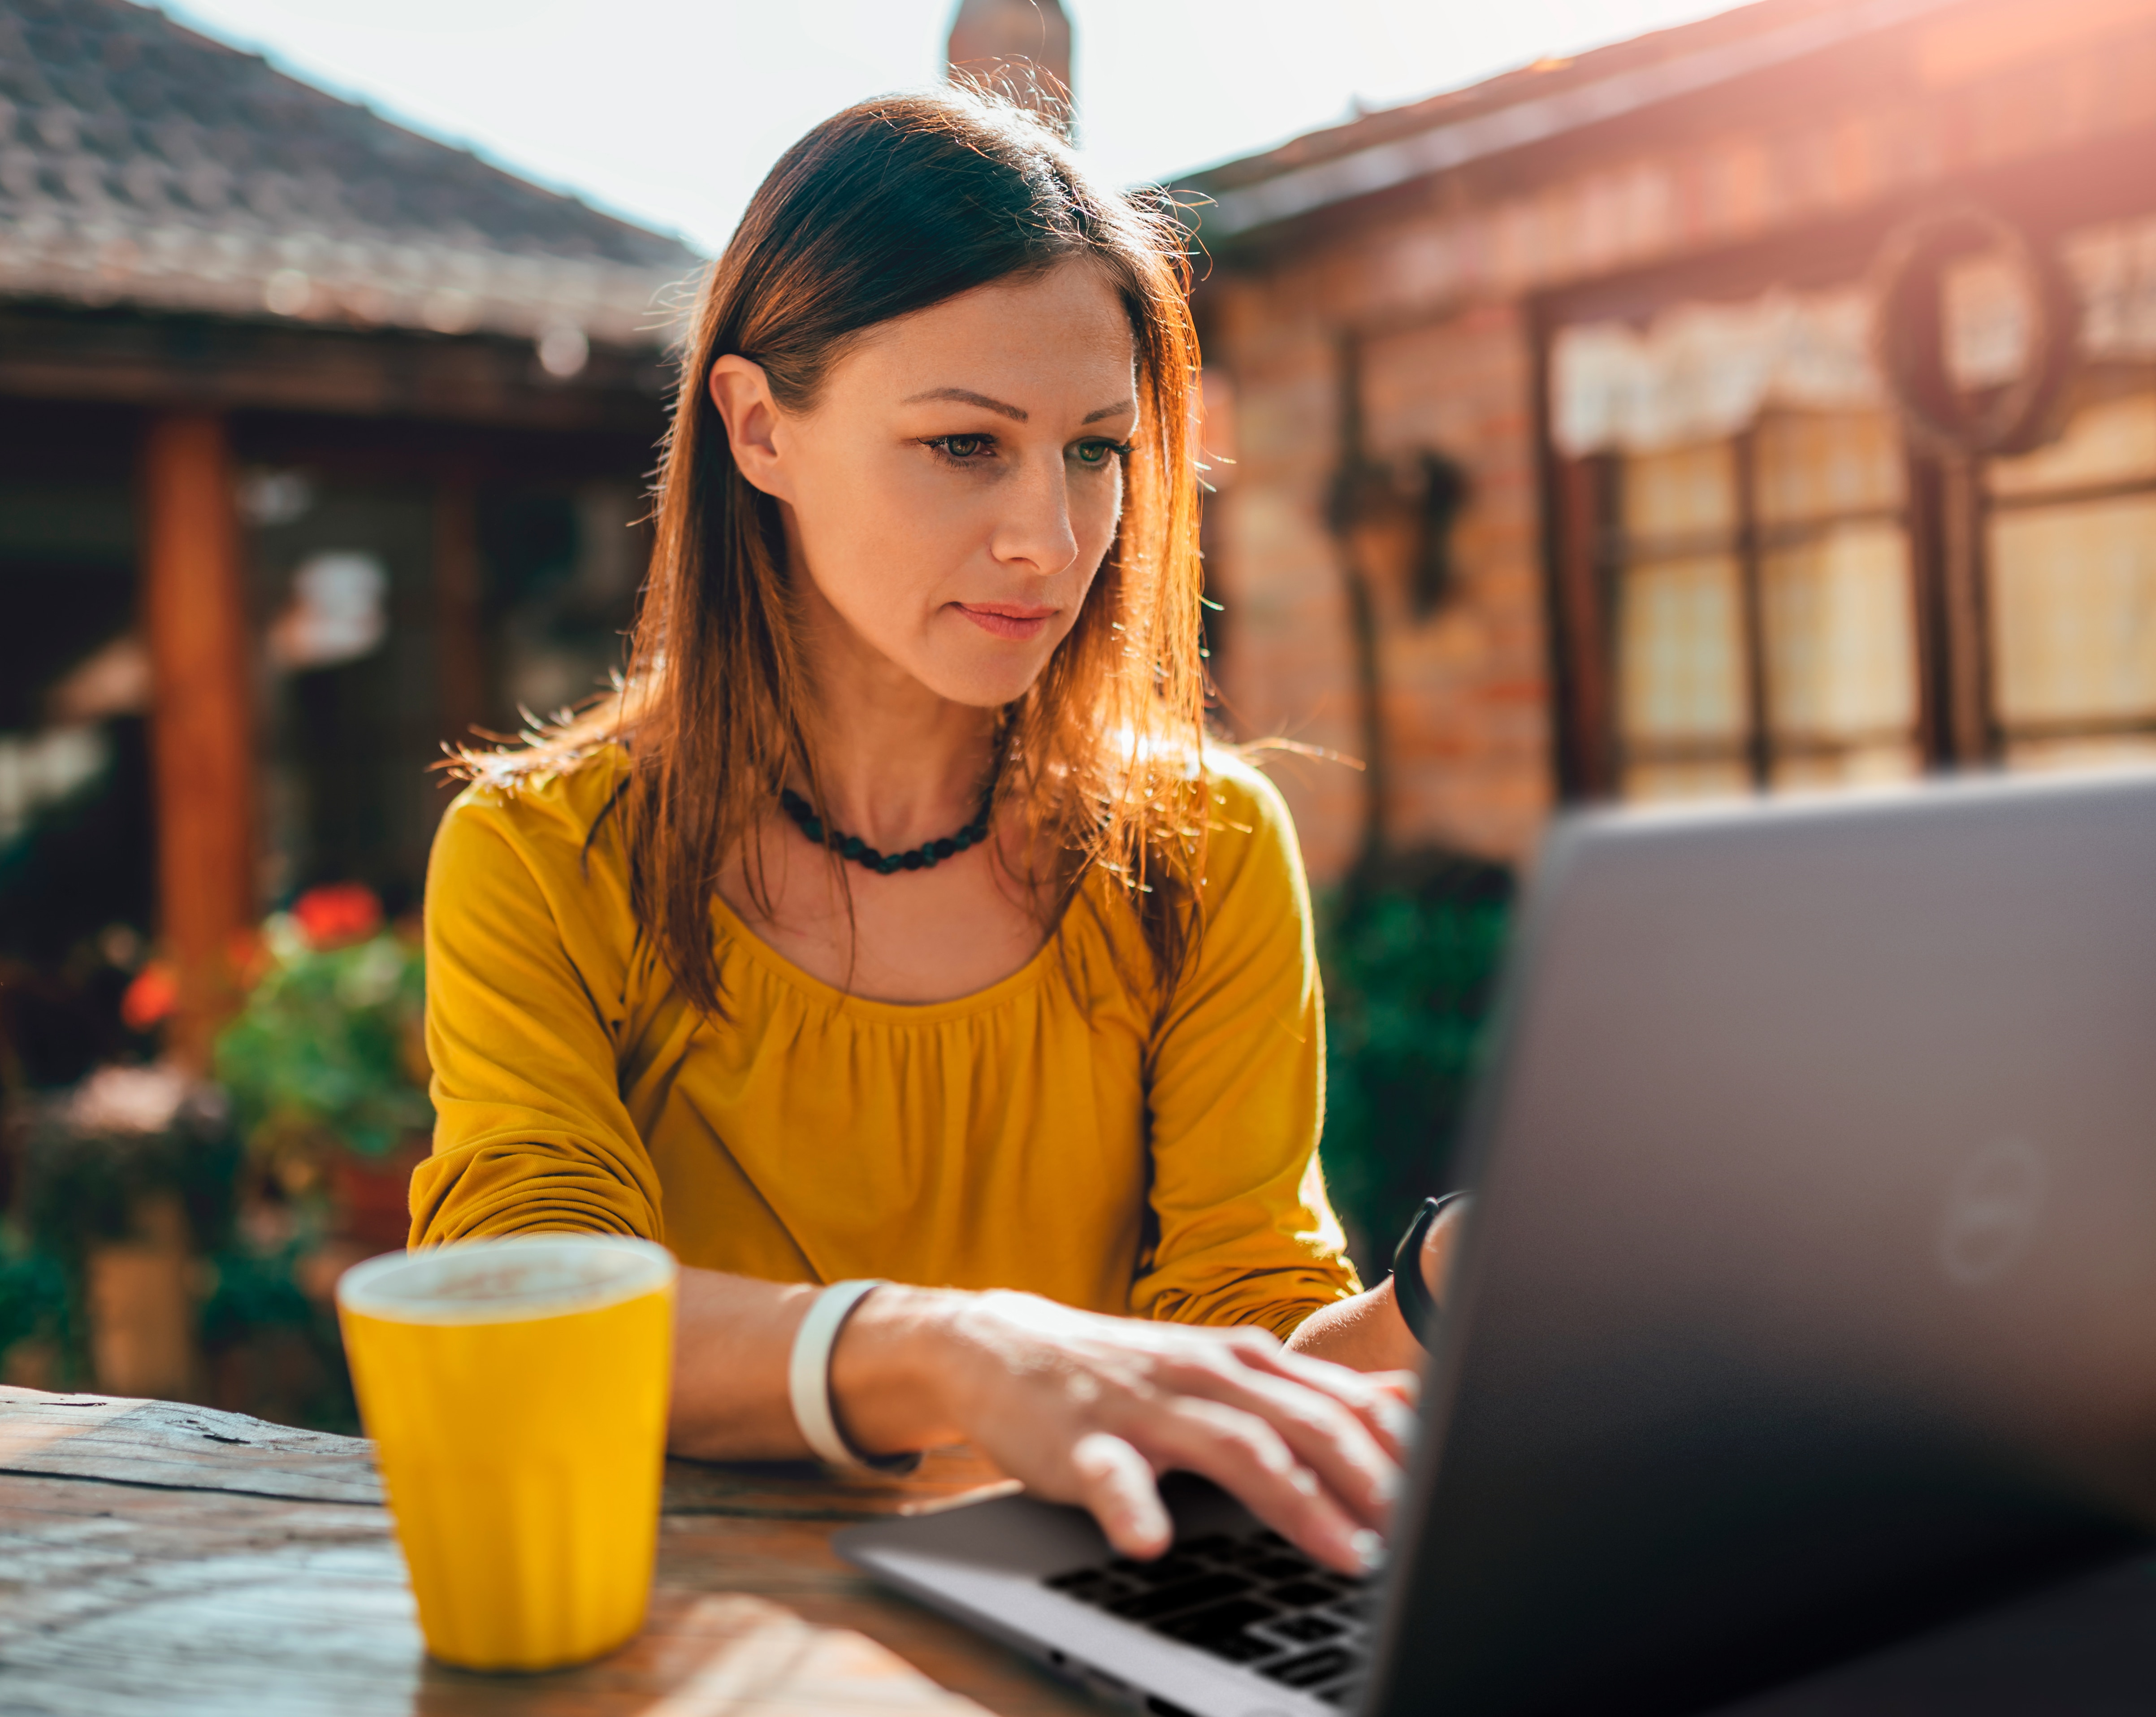 圖片顯示黃衫女子坐在 Dell 筆記型電腦前打字，前方桌上放著咖啡杯。